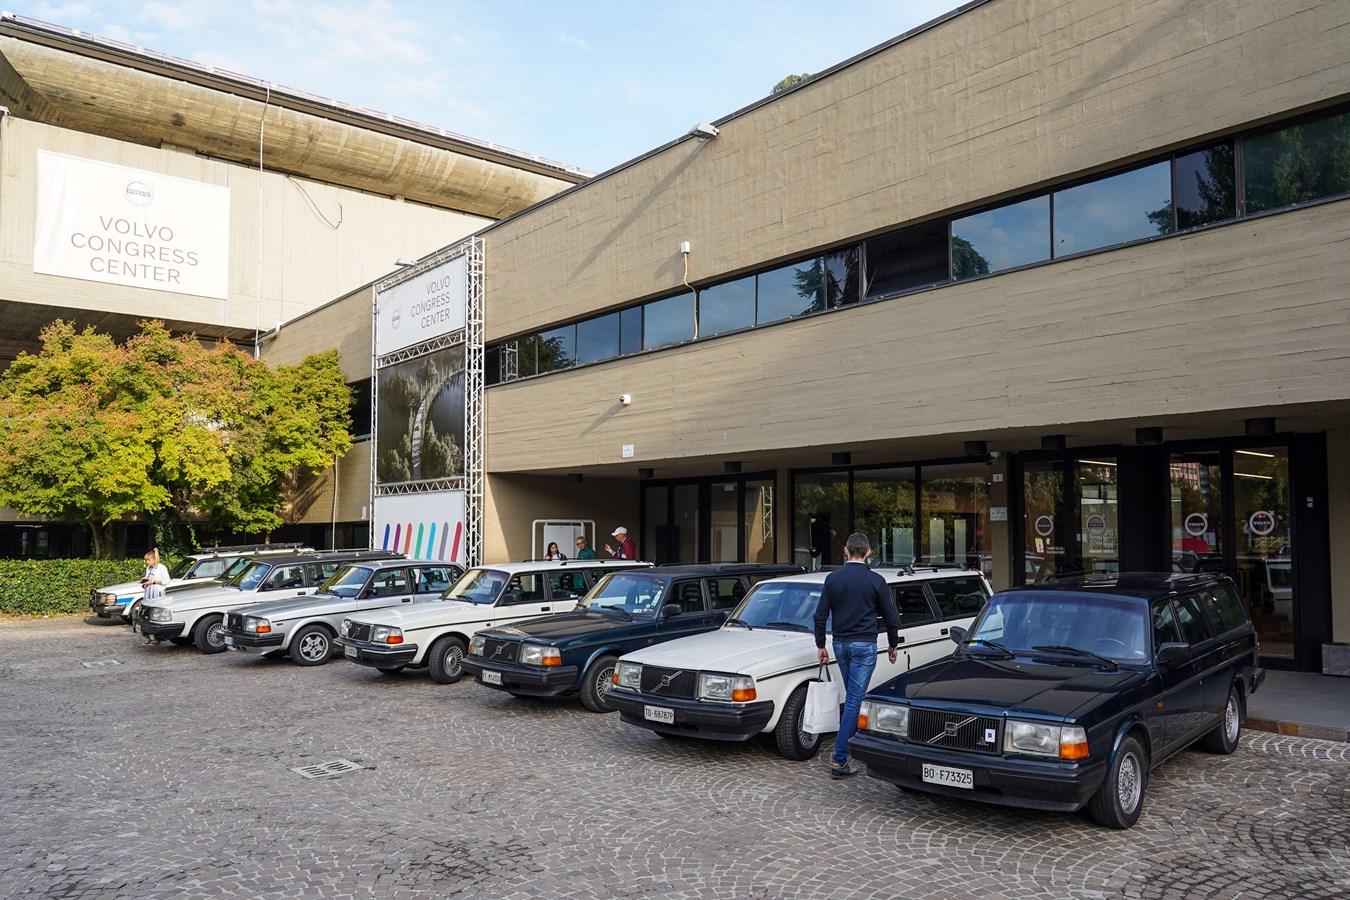 Raduno annuale del Registro Italiano Volvo d’Epoca 2021